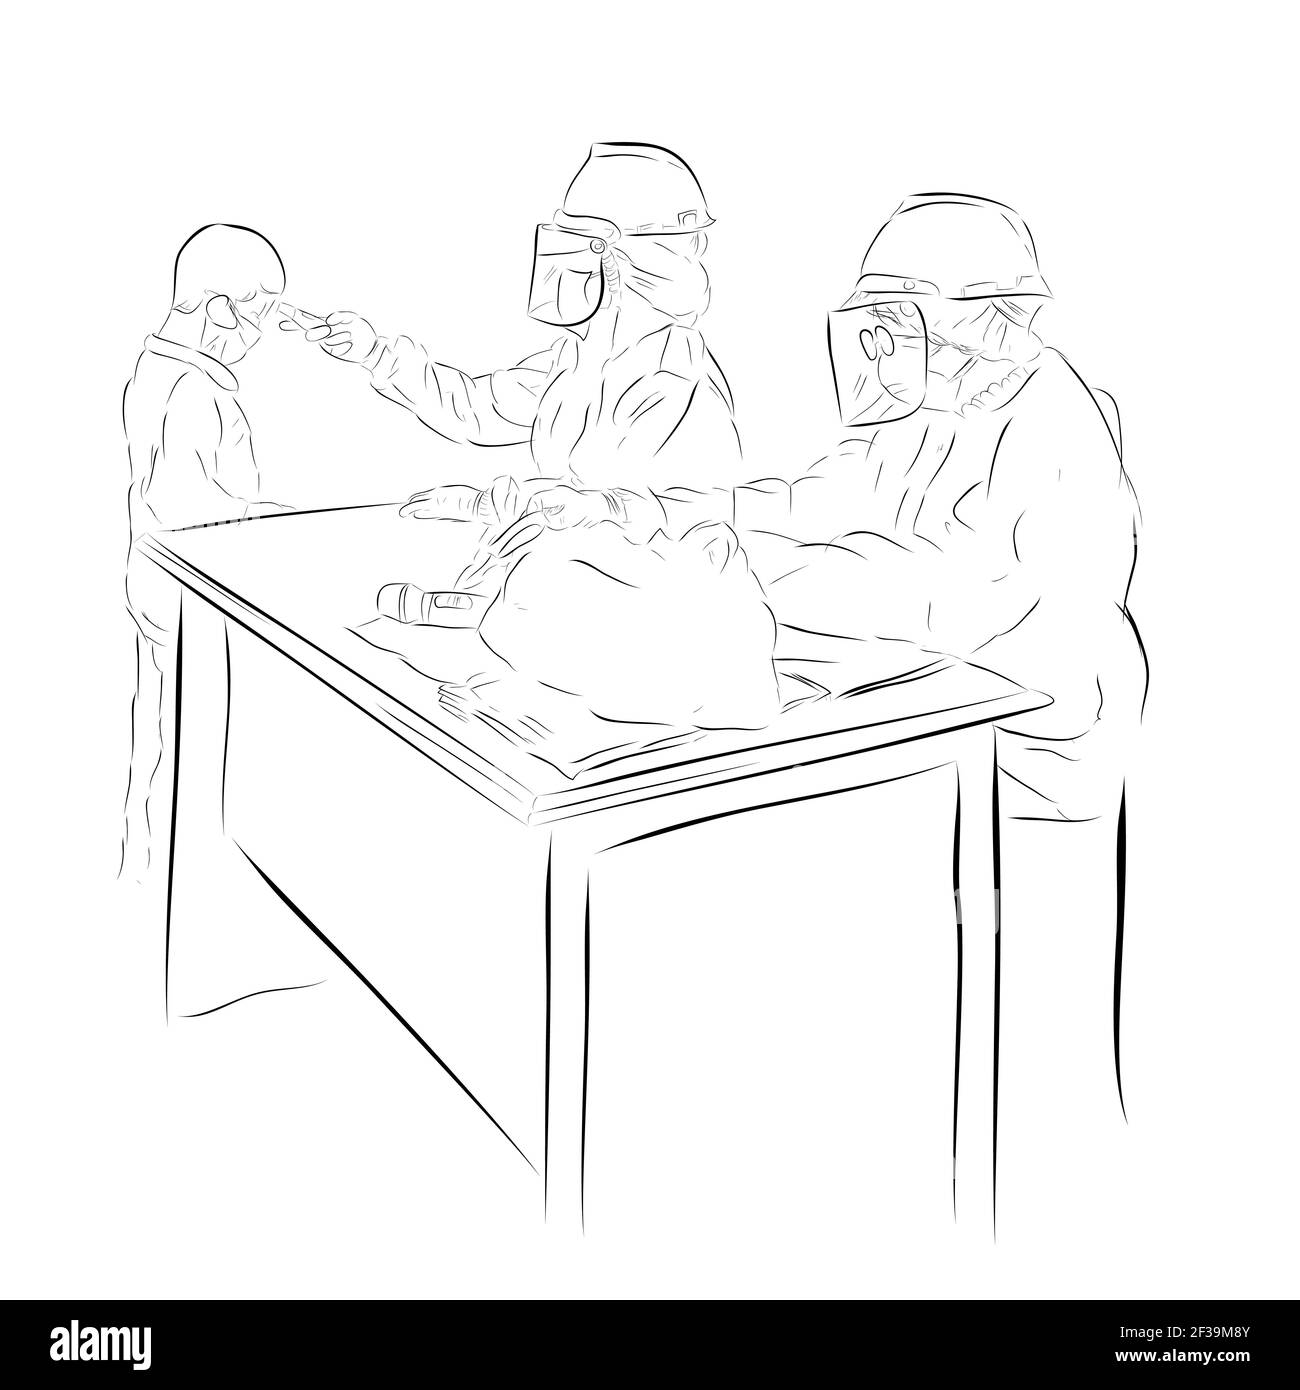 Illustrazione disegno a mano vettoriale schizzo, Boy in piedi, controllo della temperatura corporea usando un medico o un infermiere che si siede a nocciolo, protocolli sanitari durante una pandemia Illustrazione Vettoriale